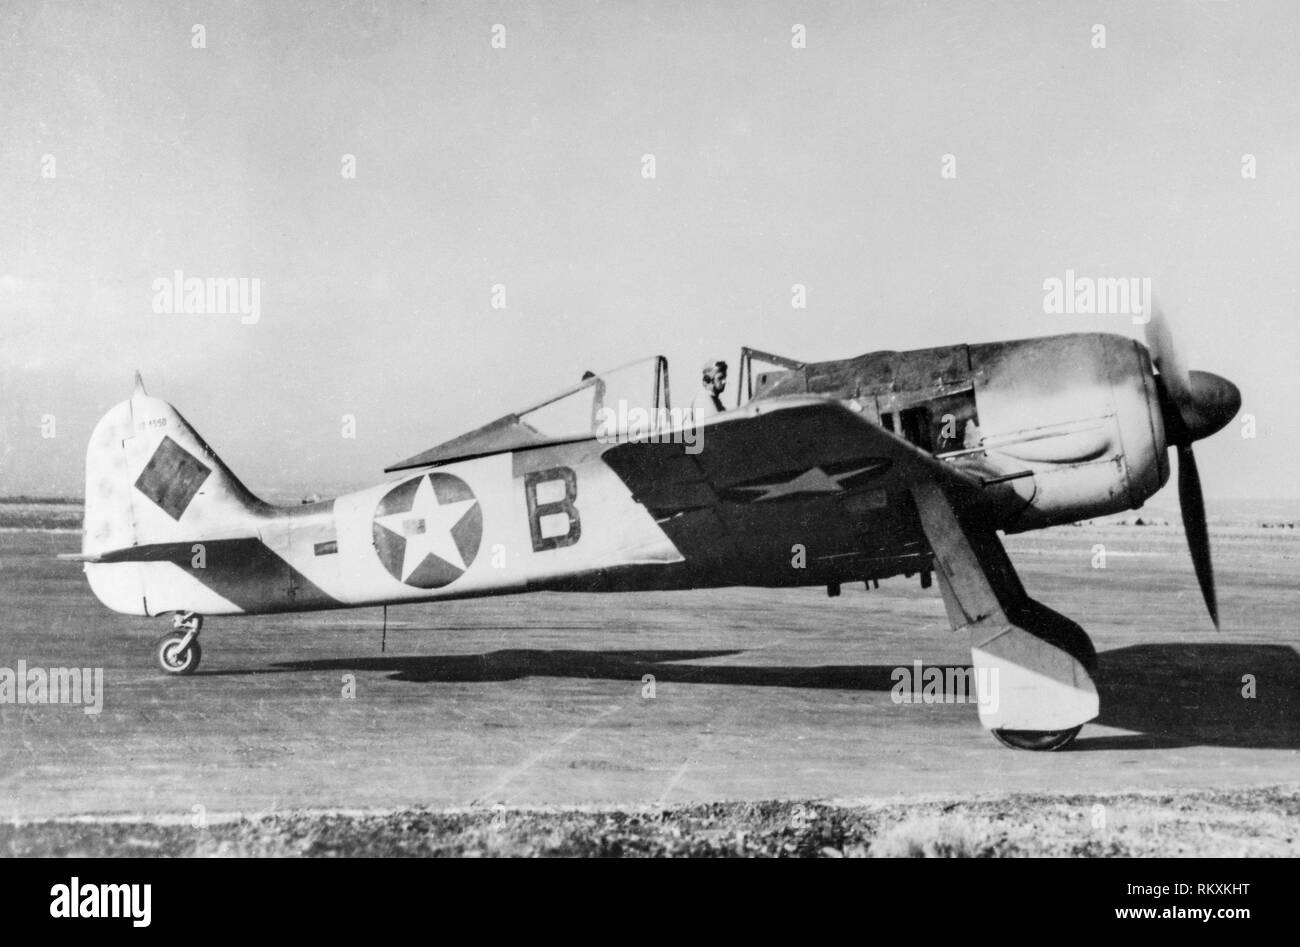 Einen gefangengenommenen deutschen Luftwaffe Focke Wulf FW190 in der Markierung der USAAF. Dieses Flugzeug war ursprünglich das Werk Nummer 0181550. Es wurde von den Alliierten in Nordafrika gefangen genommen und später von der 85 FS, 79th FG der United States Army Air Force geflogen. Stockfoto